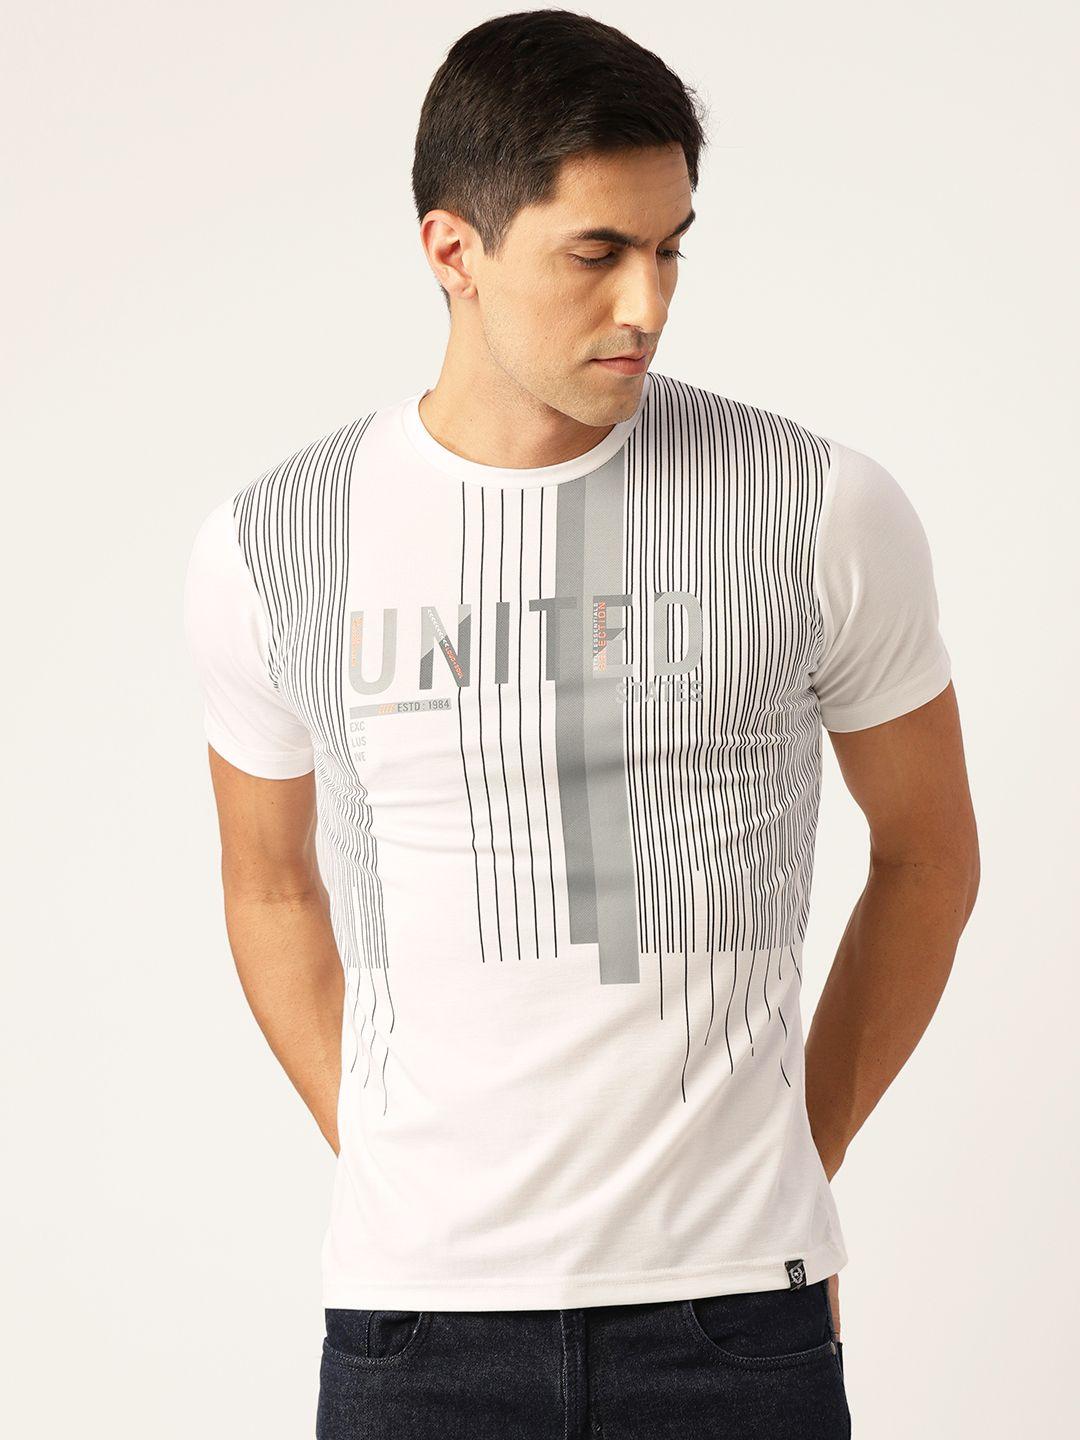 monte carlo men white & black striped t-shirt